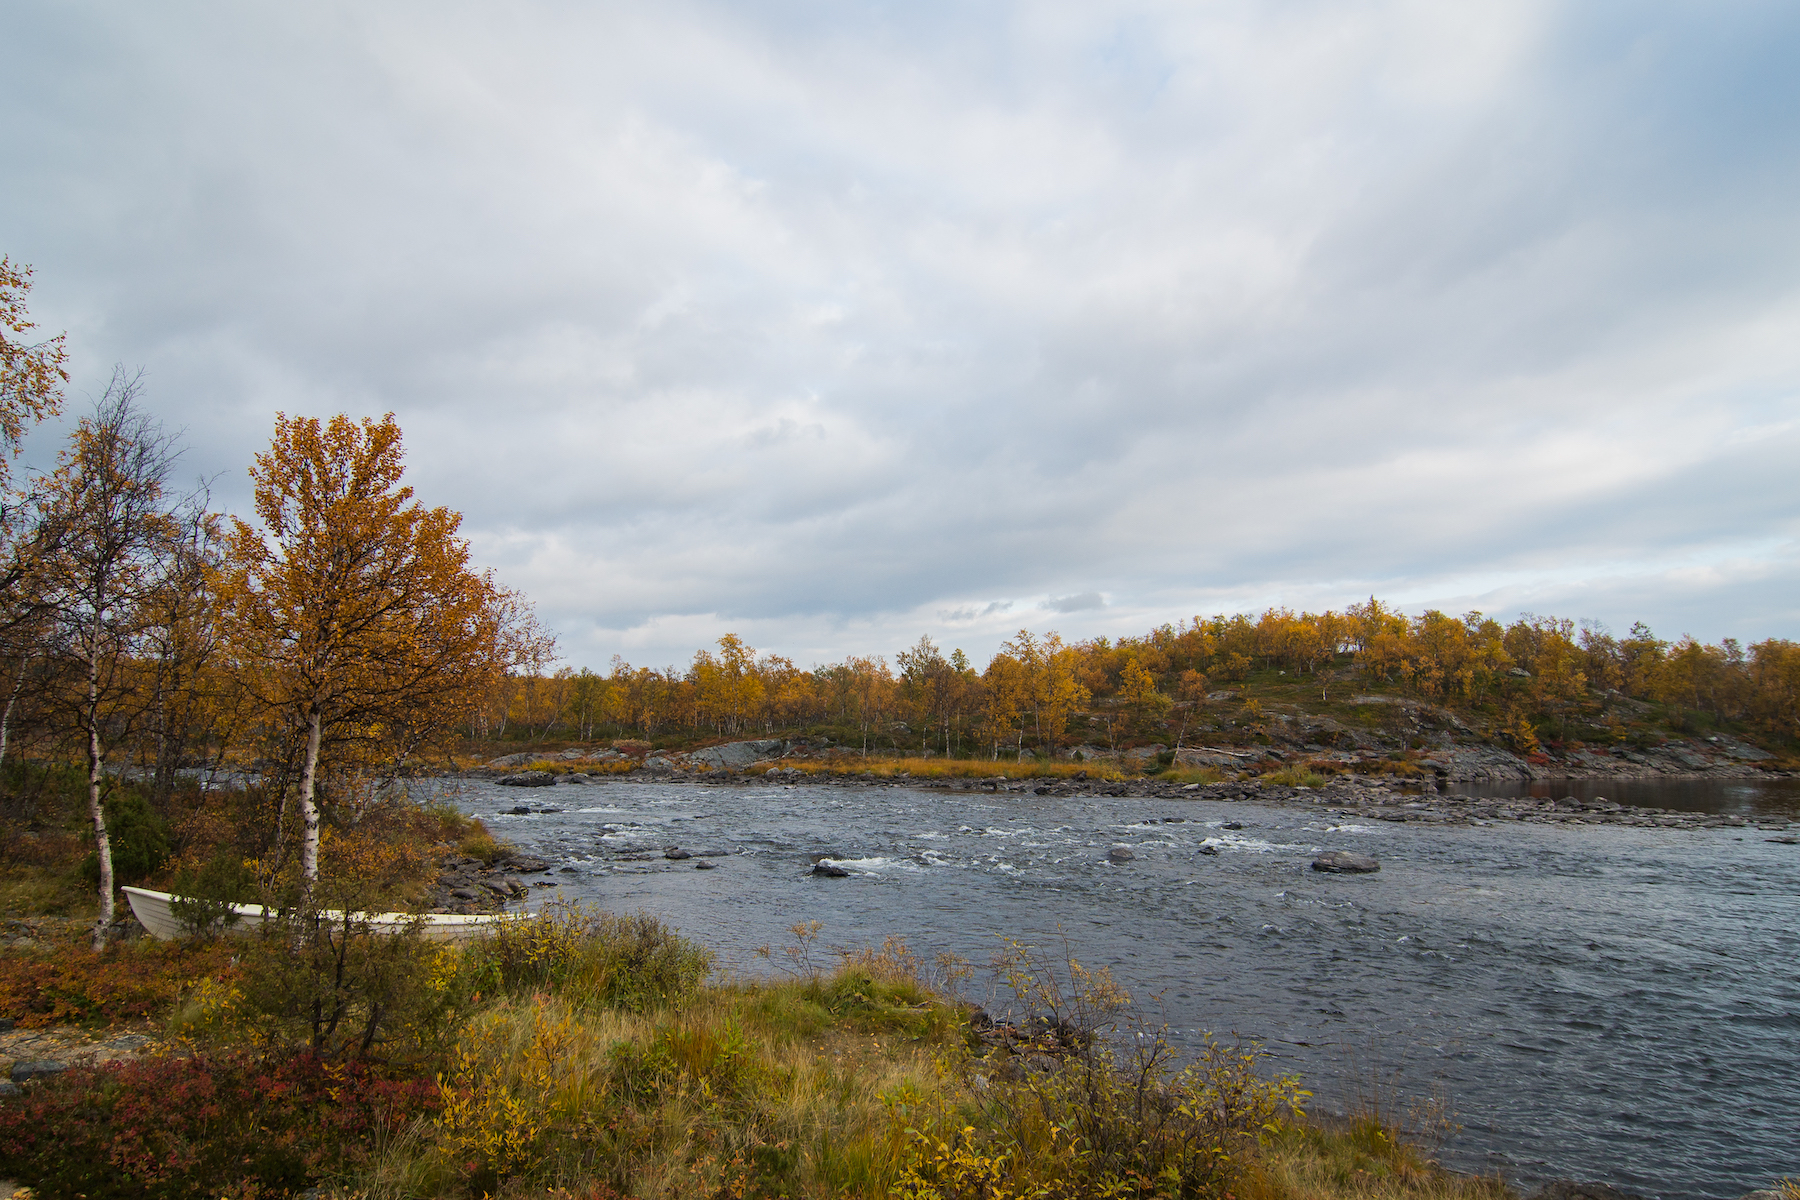 The Näätämö River